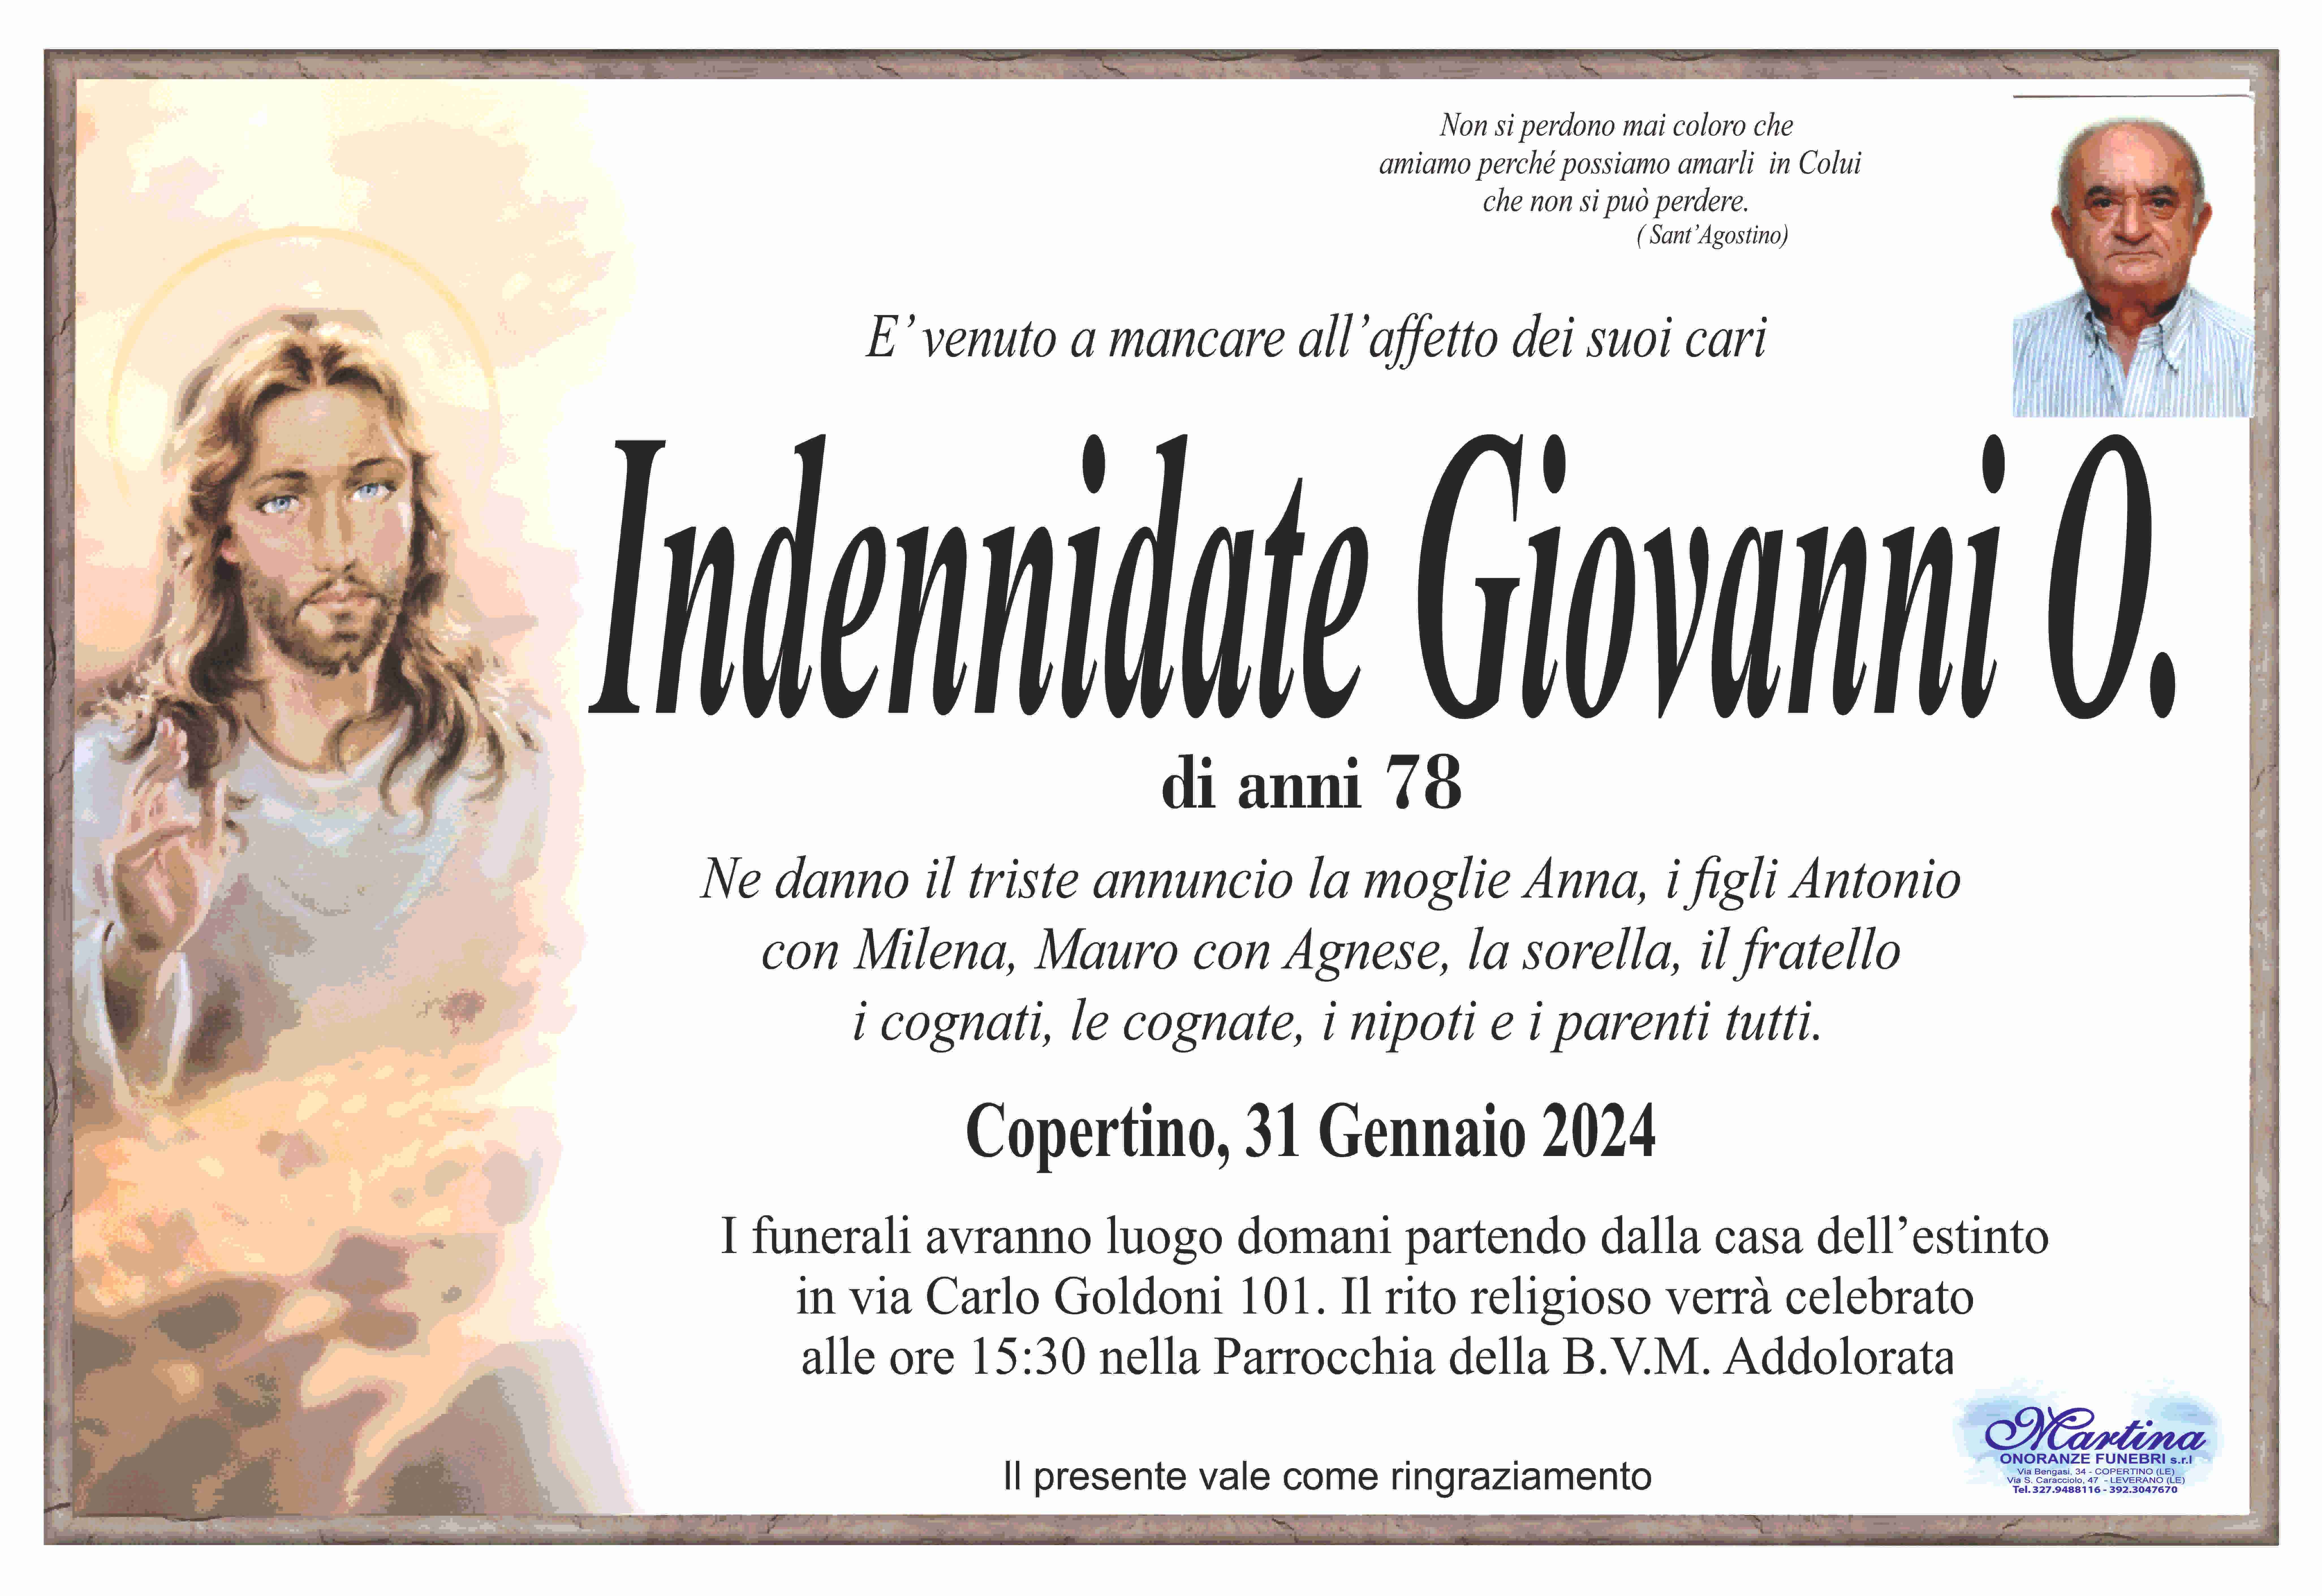 Giovanni Indennidate